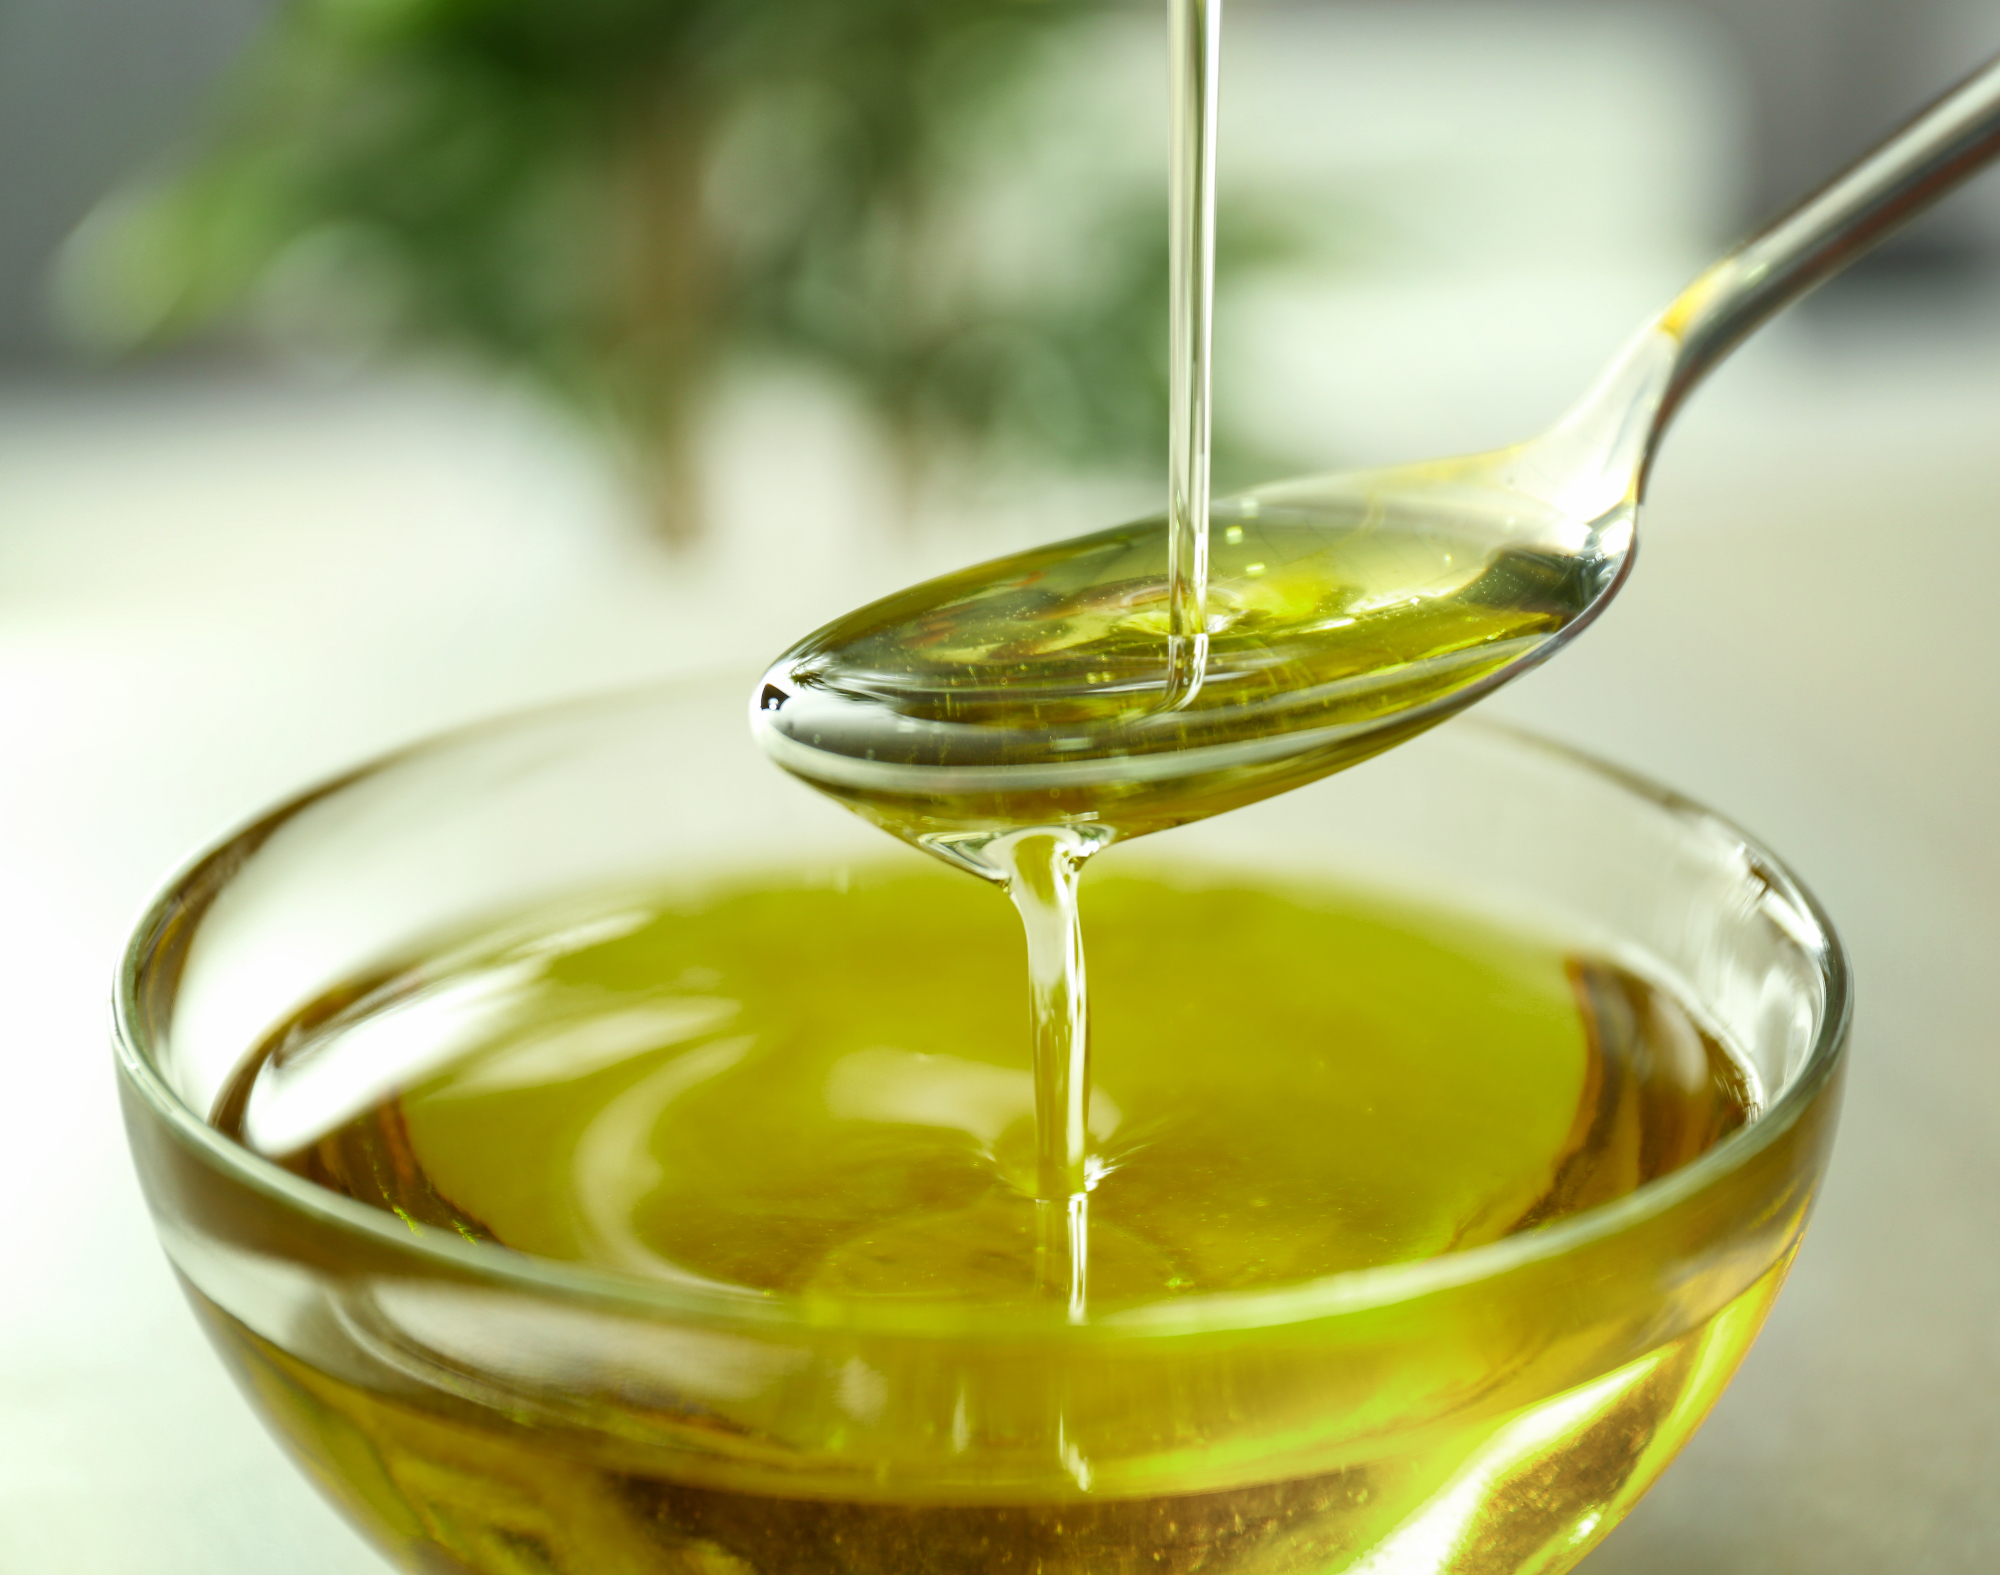 Olivno olje za obraz ima lahko zelo dobre lastnosti